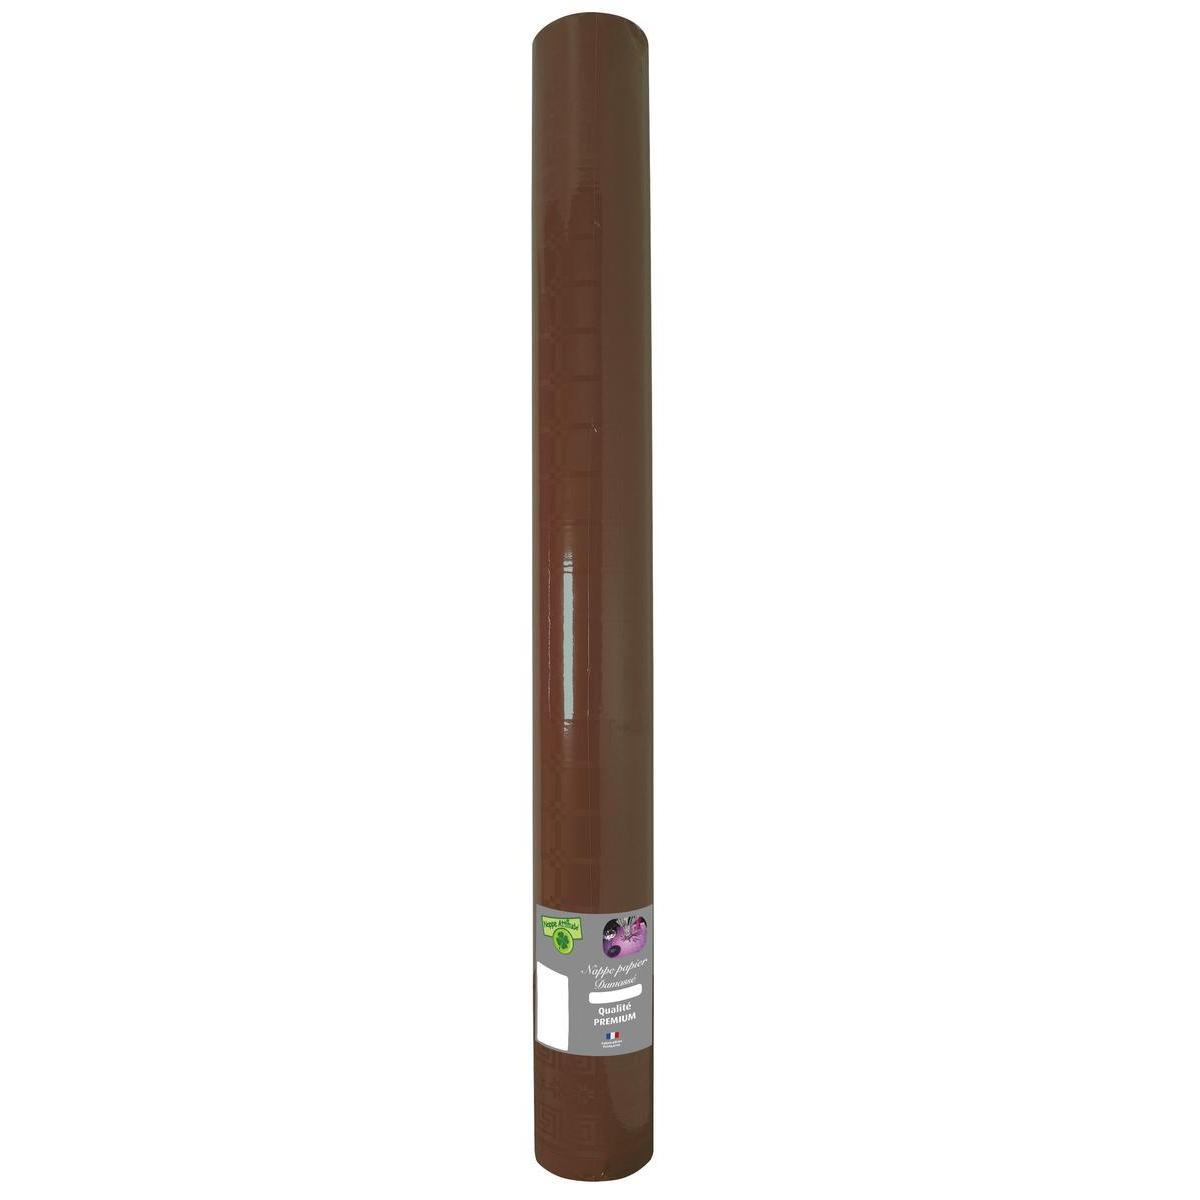 Nappe effet damassé - Papier - 20 m x 120 cm - Marron chocolat